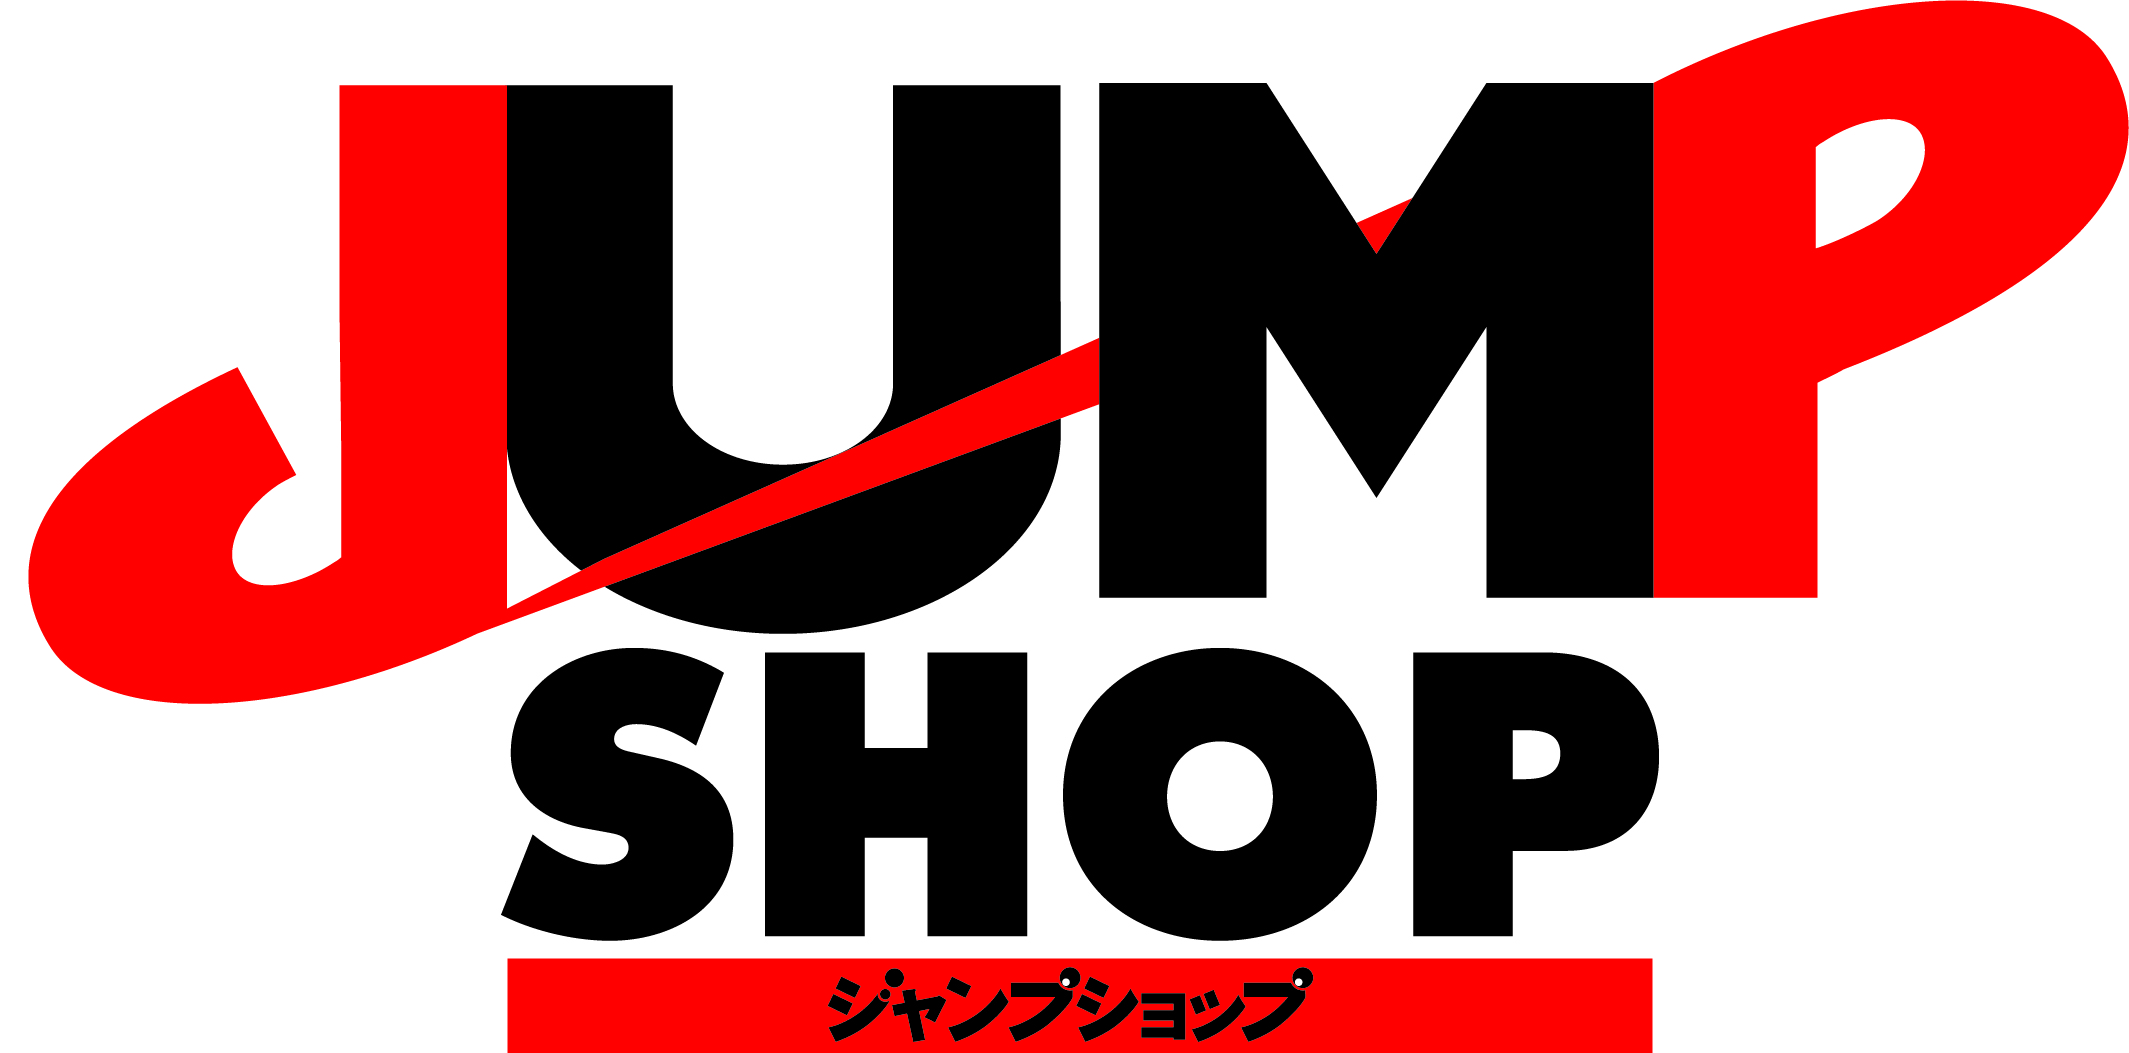 11月29日 日 期間限定 鬼滅の刃 グッズショップin Jump Shop東京 アクアシティお台場店のチケット情報 予約 購入 販売 ライヴポケット